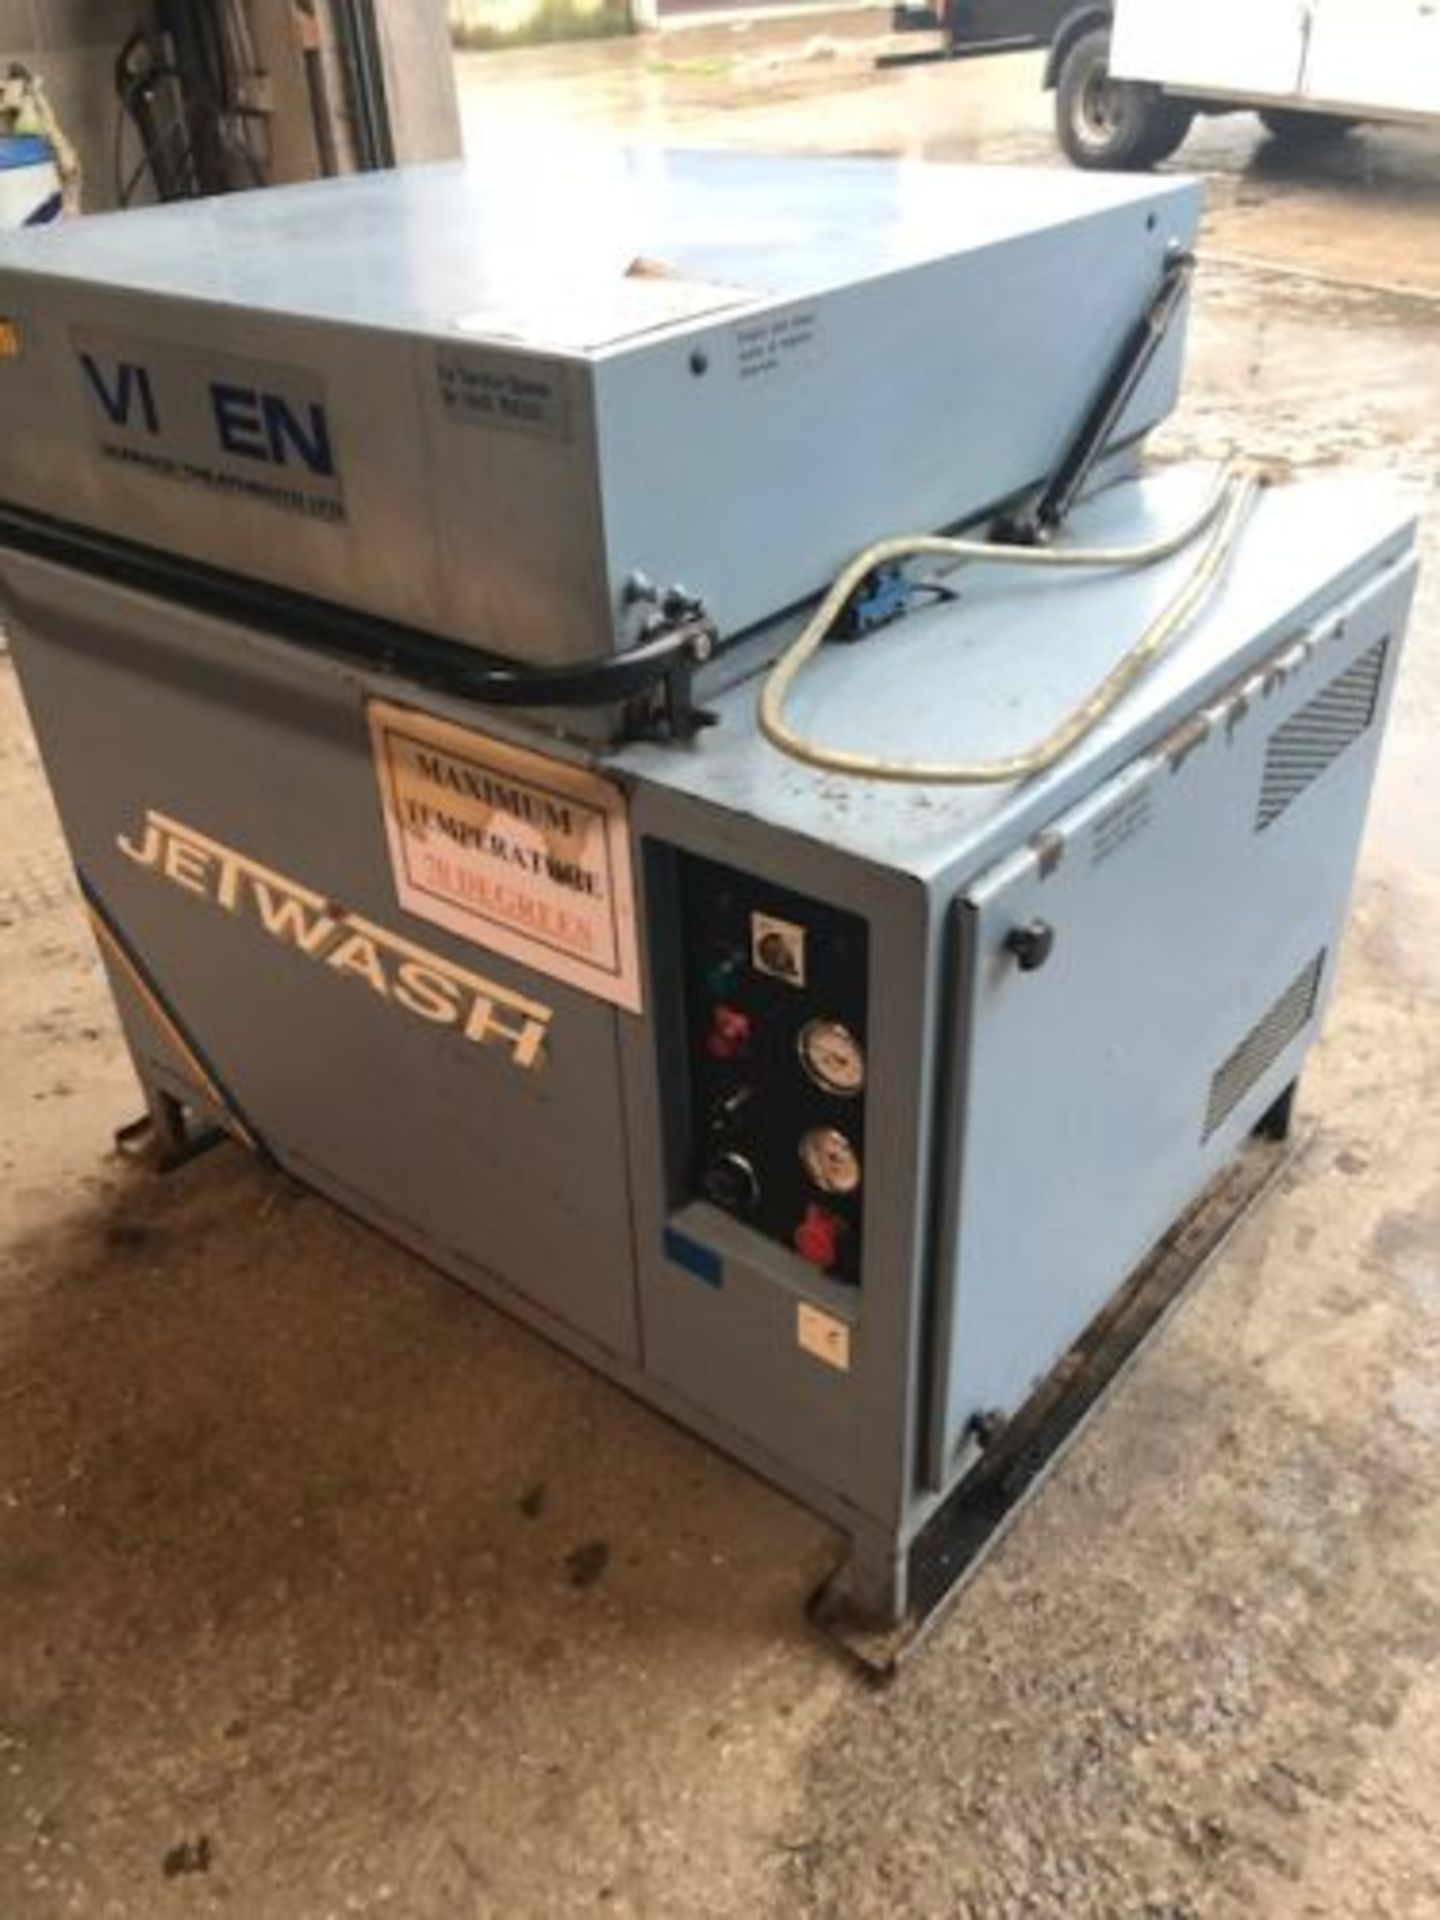 Vixen Hot Fluid Jet Wash Unit, three phase - Image 2 of 6